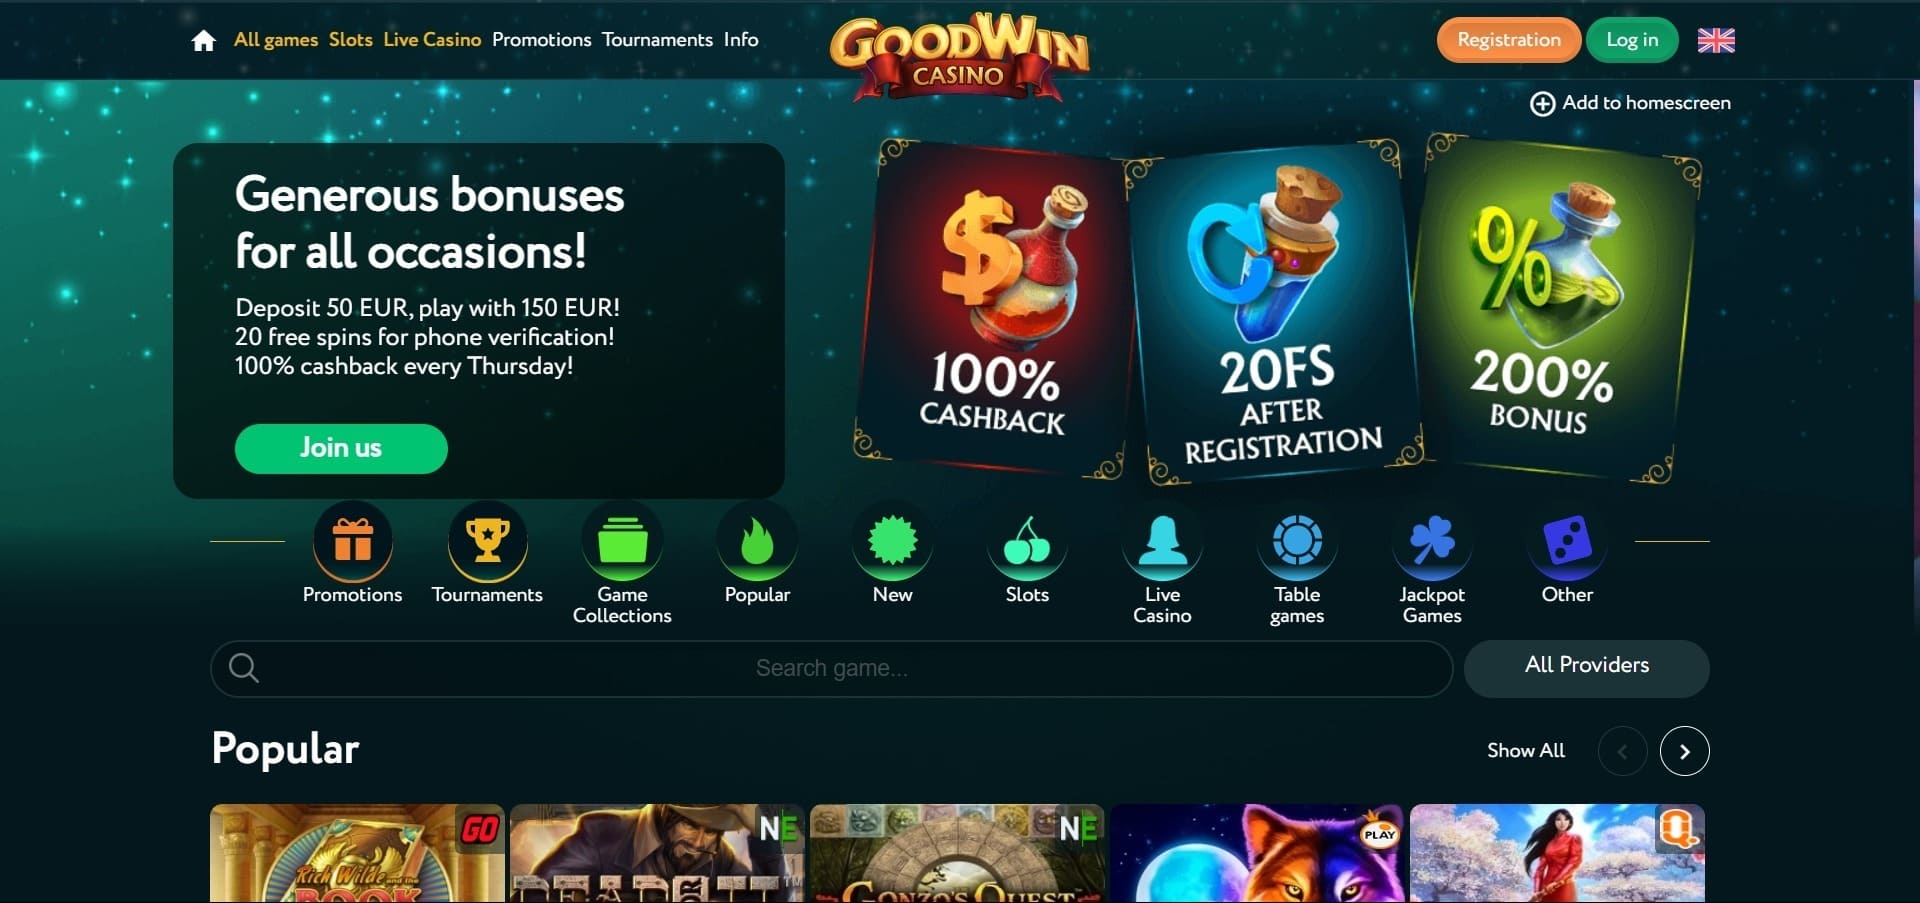 Goodwin Casino'nun resmi web sitesi